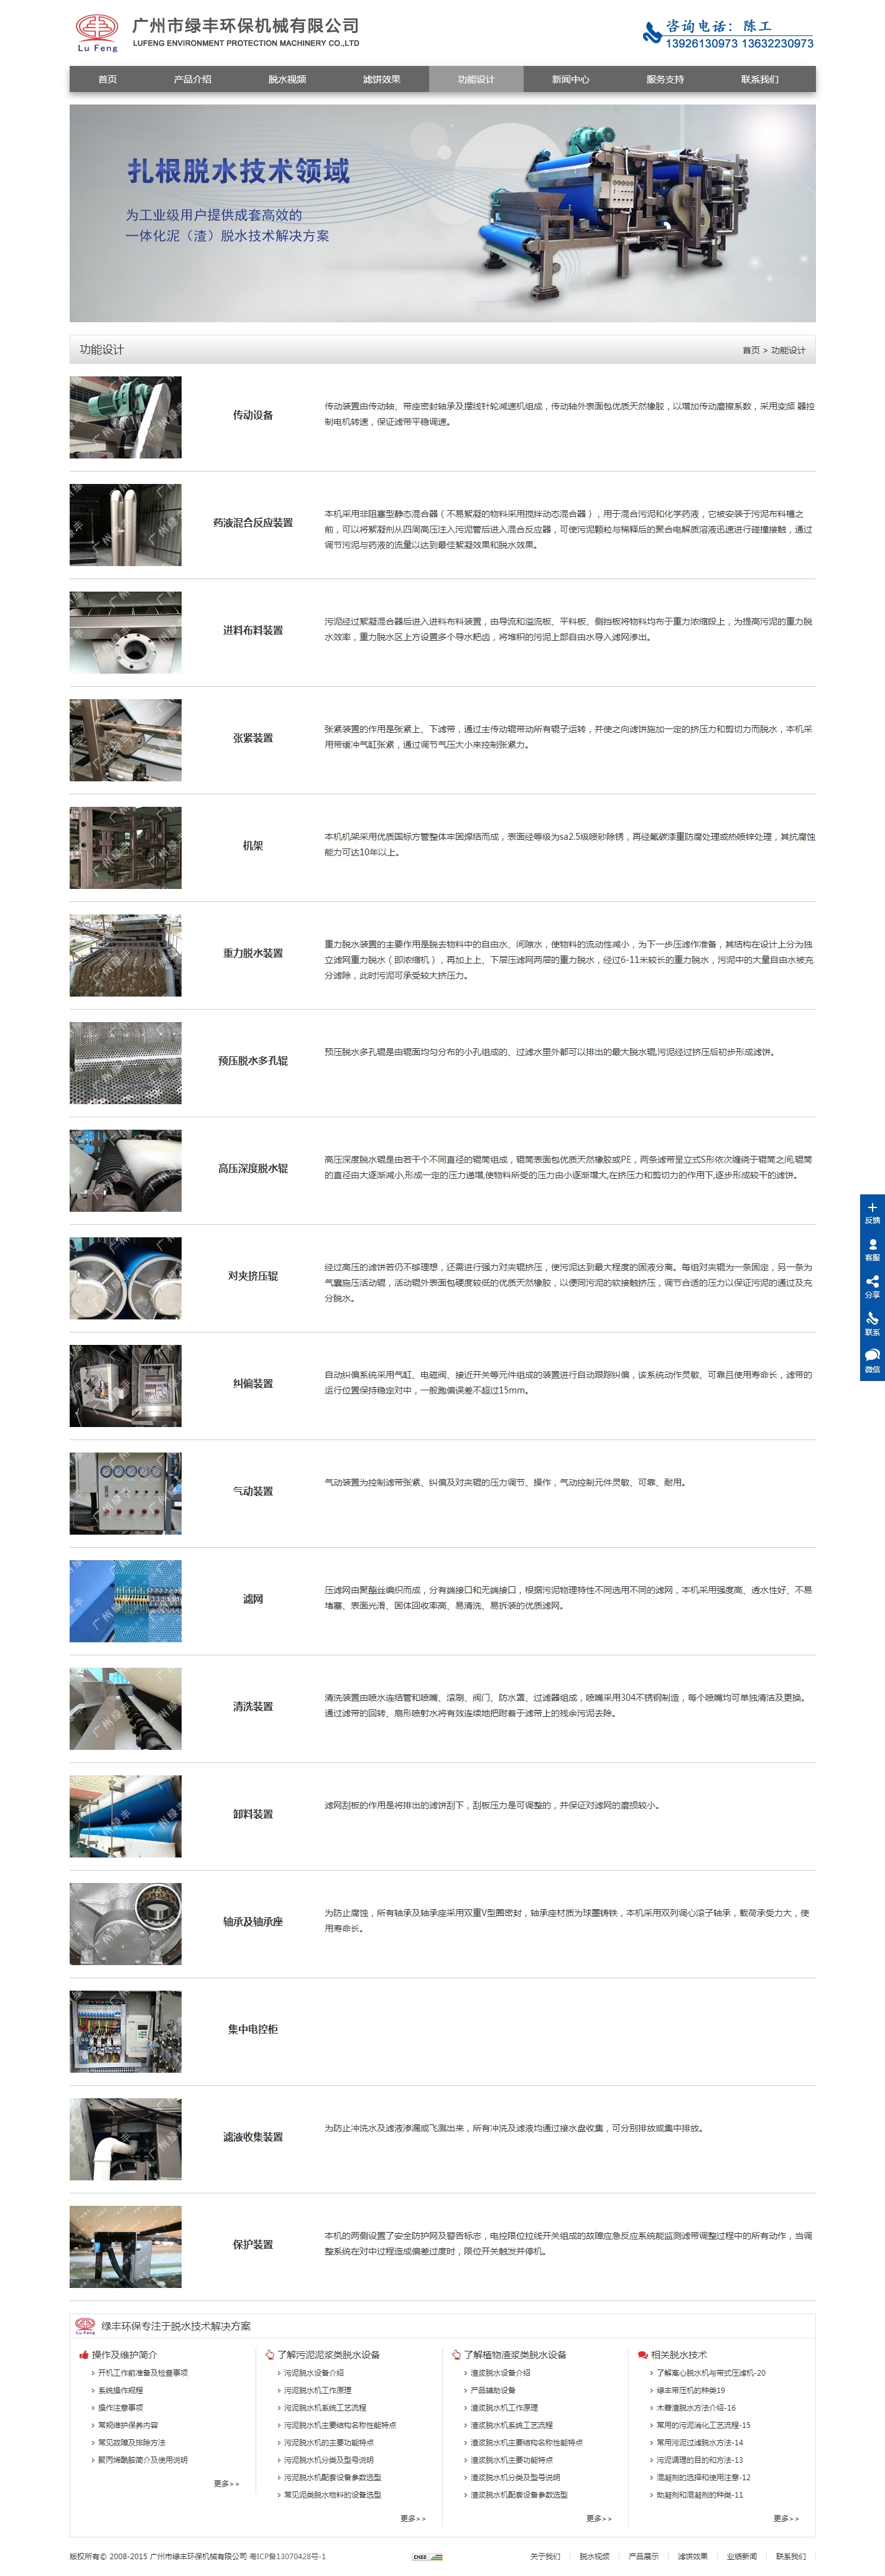 广州市绿丰环保机械有限公司微加响应式网站案例